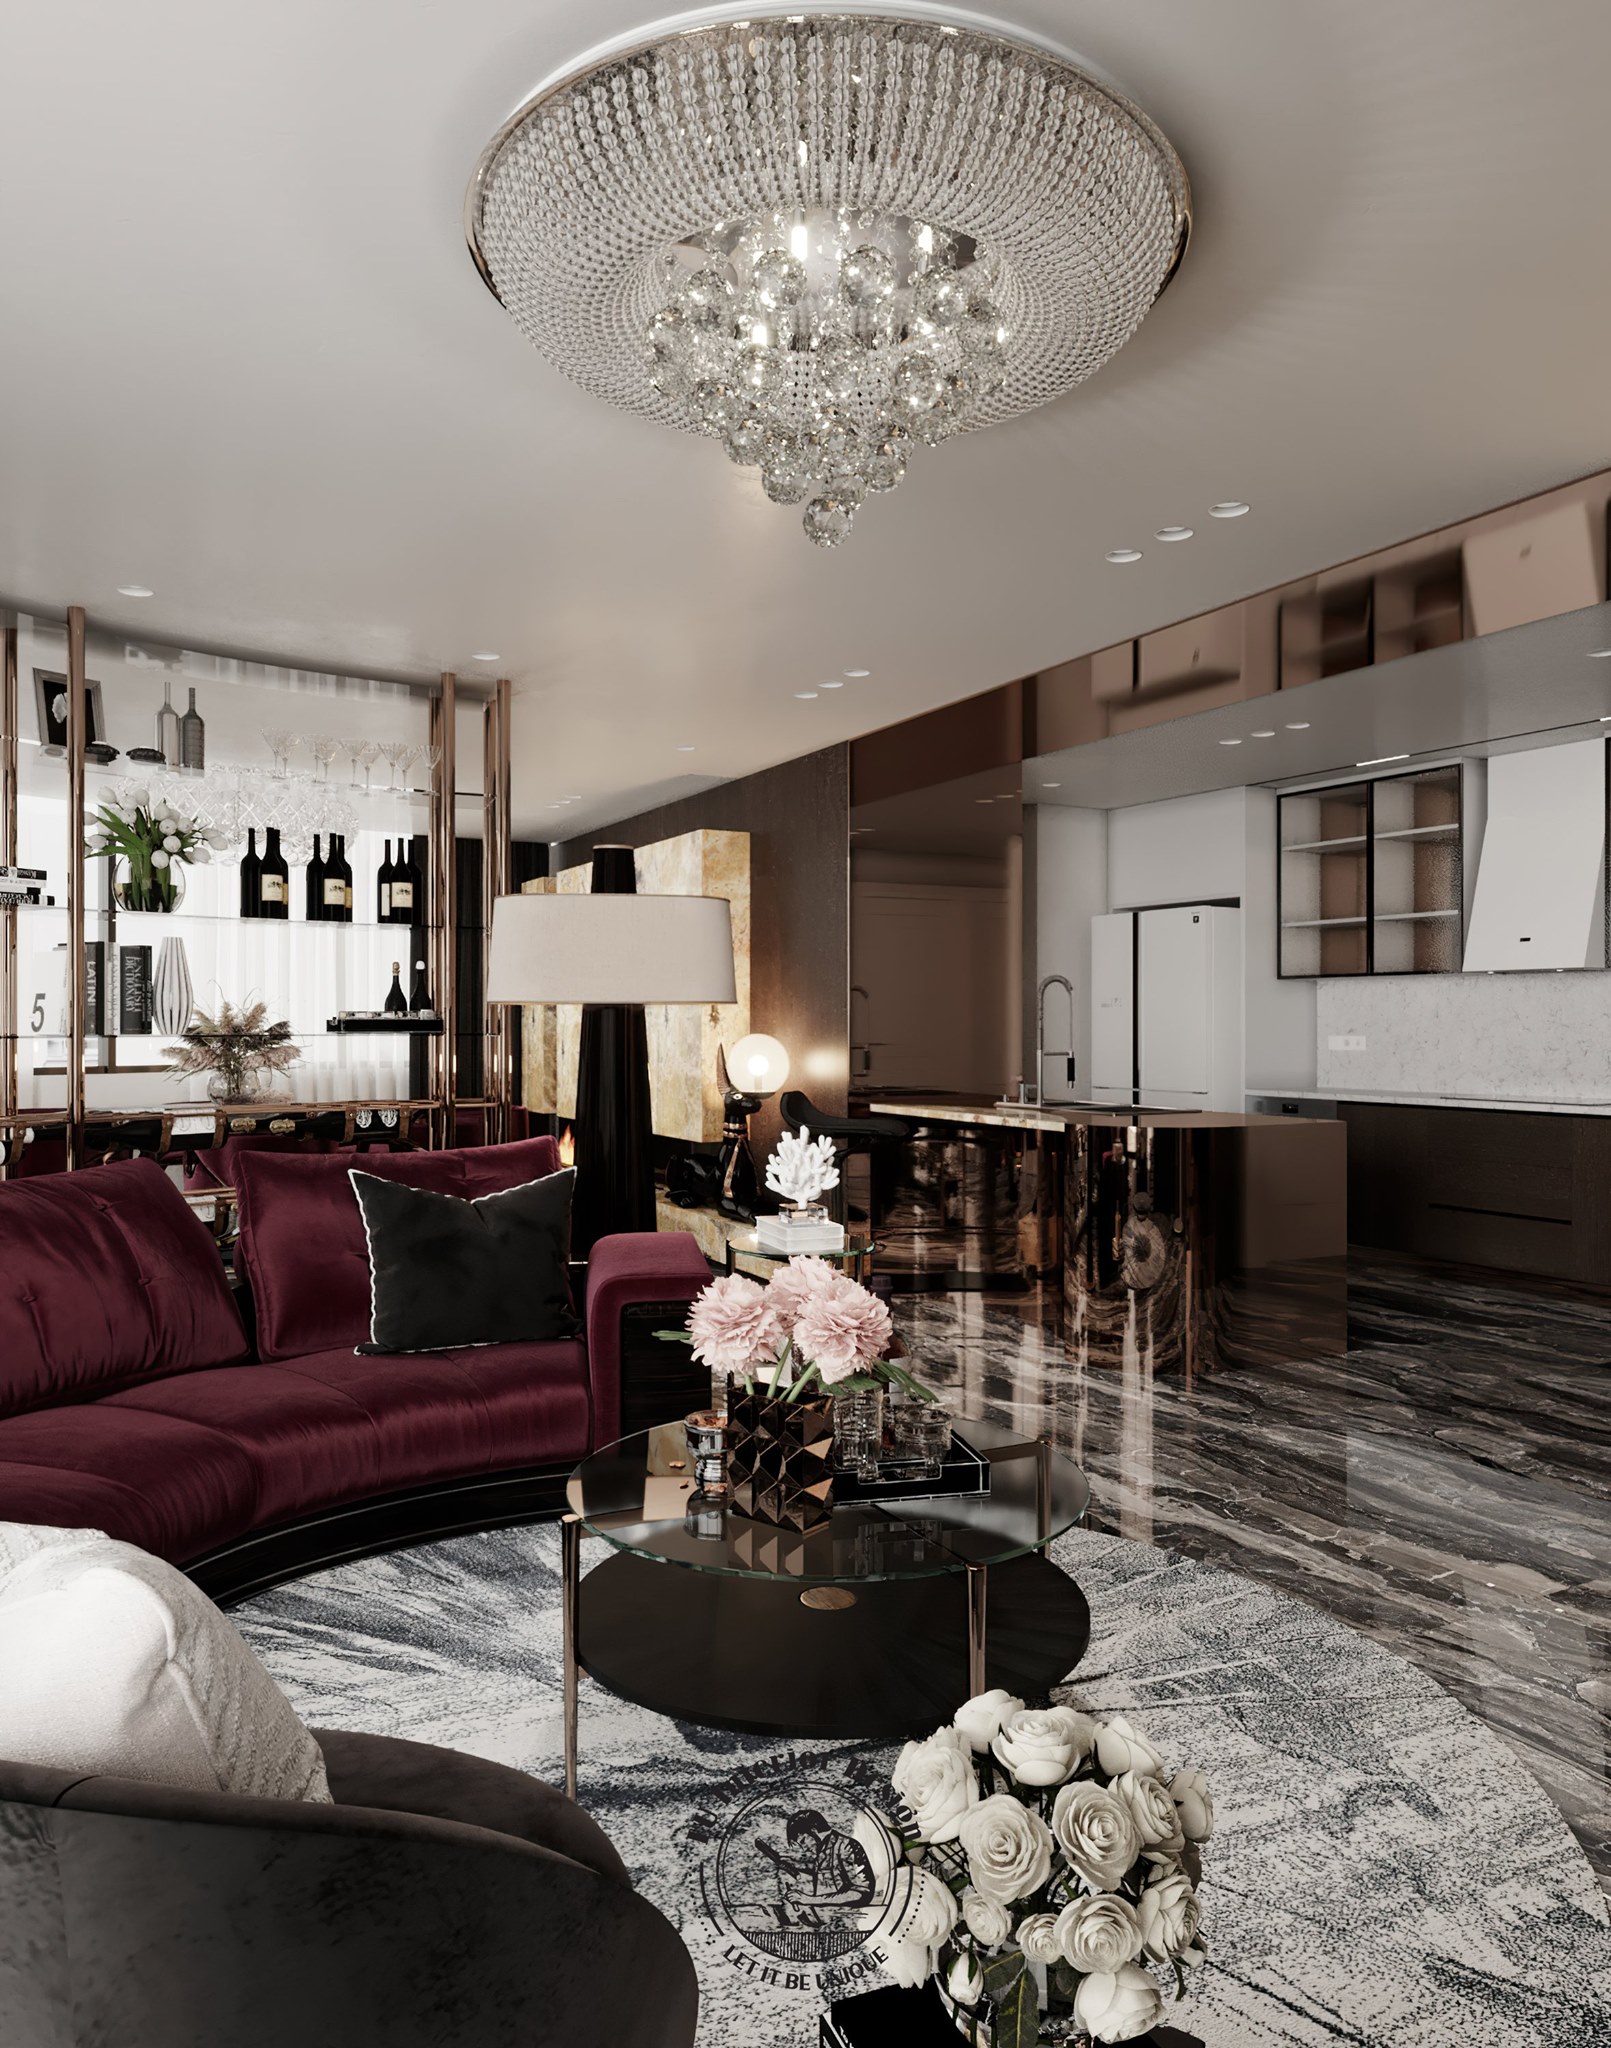 Sắc đỏ của sofa làm điểm nhấn cho không gian phòng khách thêm sang trọng | Dự án Penthouse Vũng Tàu - LU Design thực hiện.